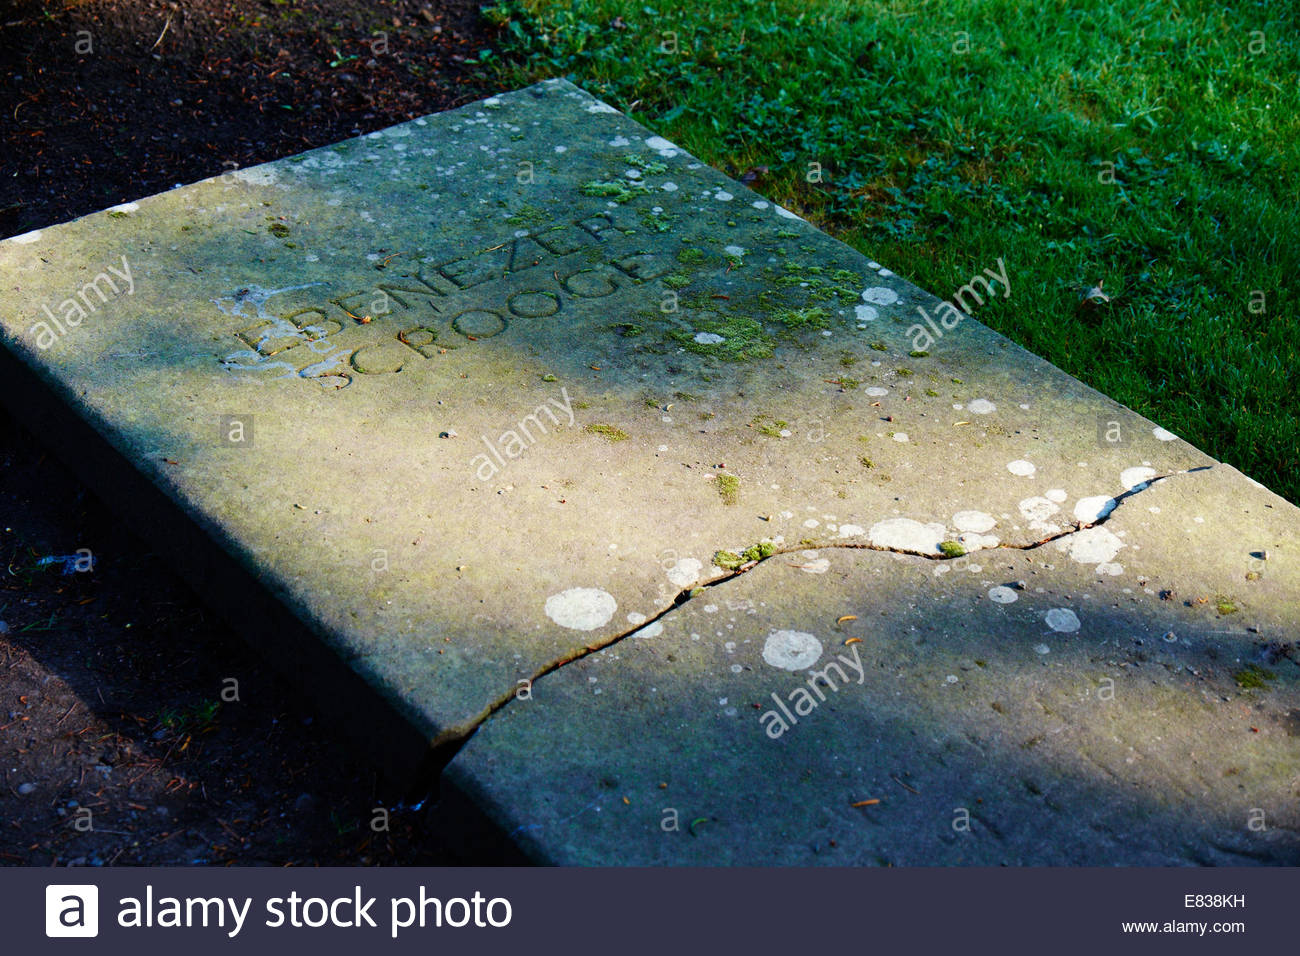 ebenezer-scrooge-grave-stone-in-st-chads